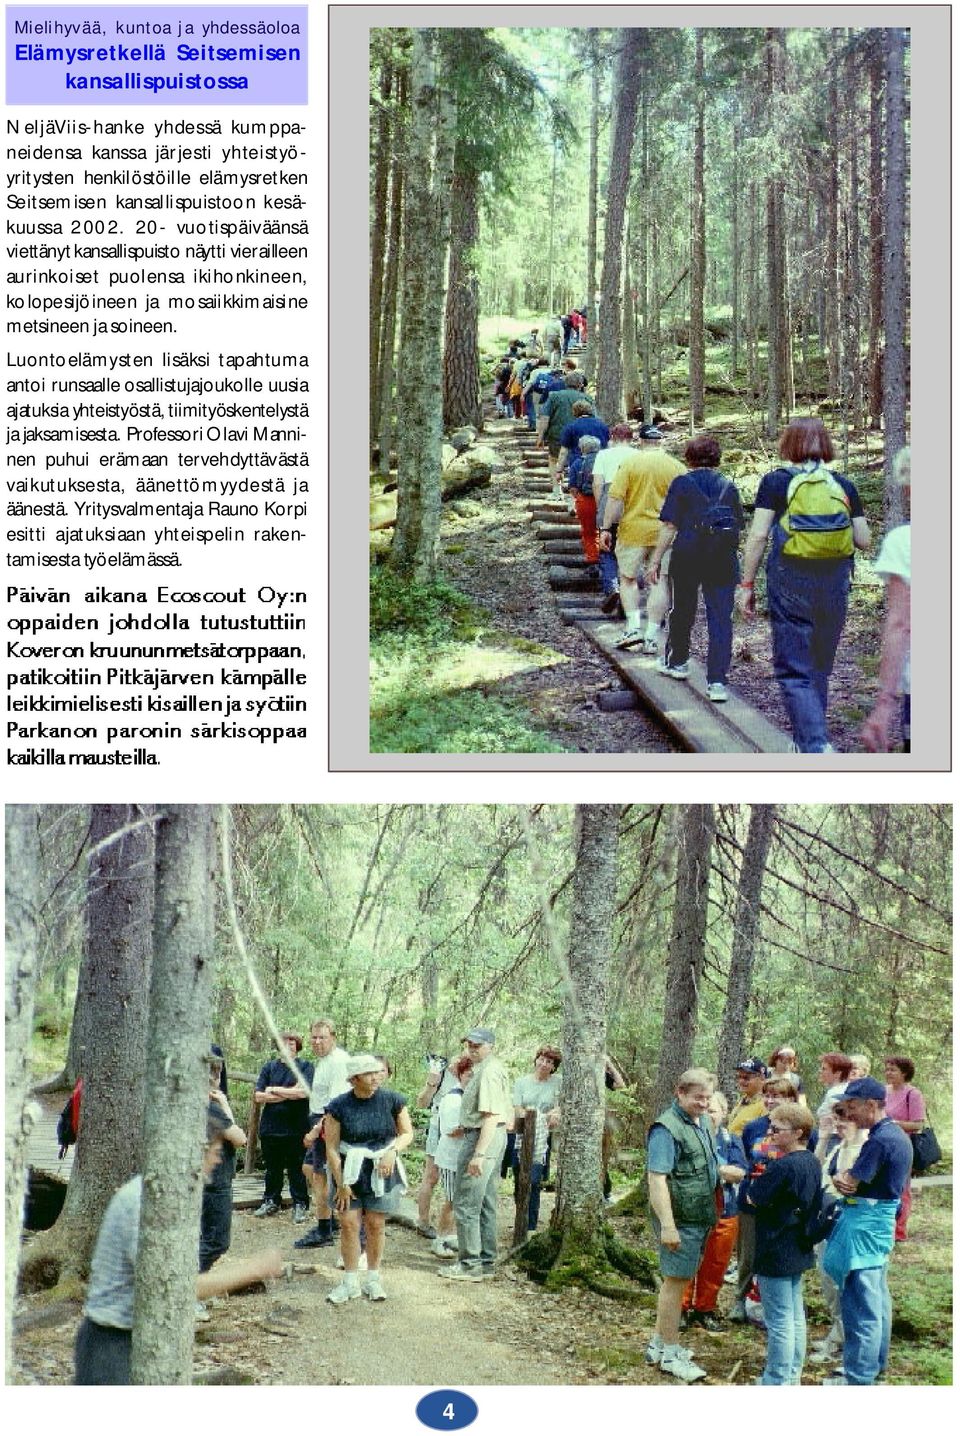 20- vuotispäiväänsä viettänyt kansallispuisto näytti vierailleen aurinkoiset puolensa ikihonkineen, kolopesijöineen ja mosaiikkimaisine metsineen ja soineen.